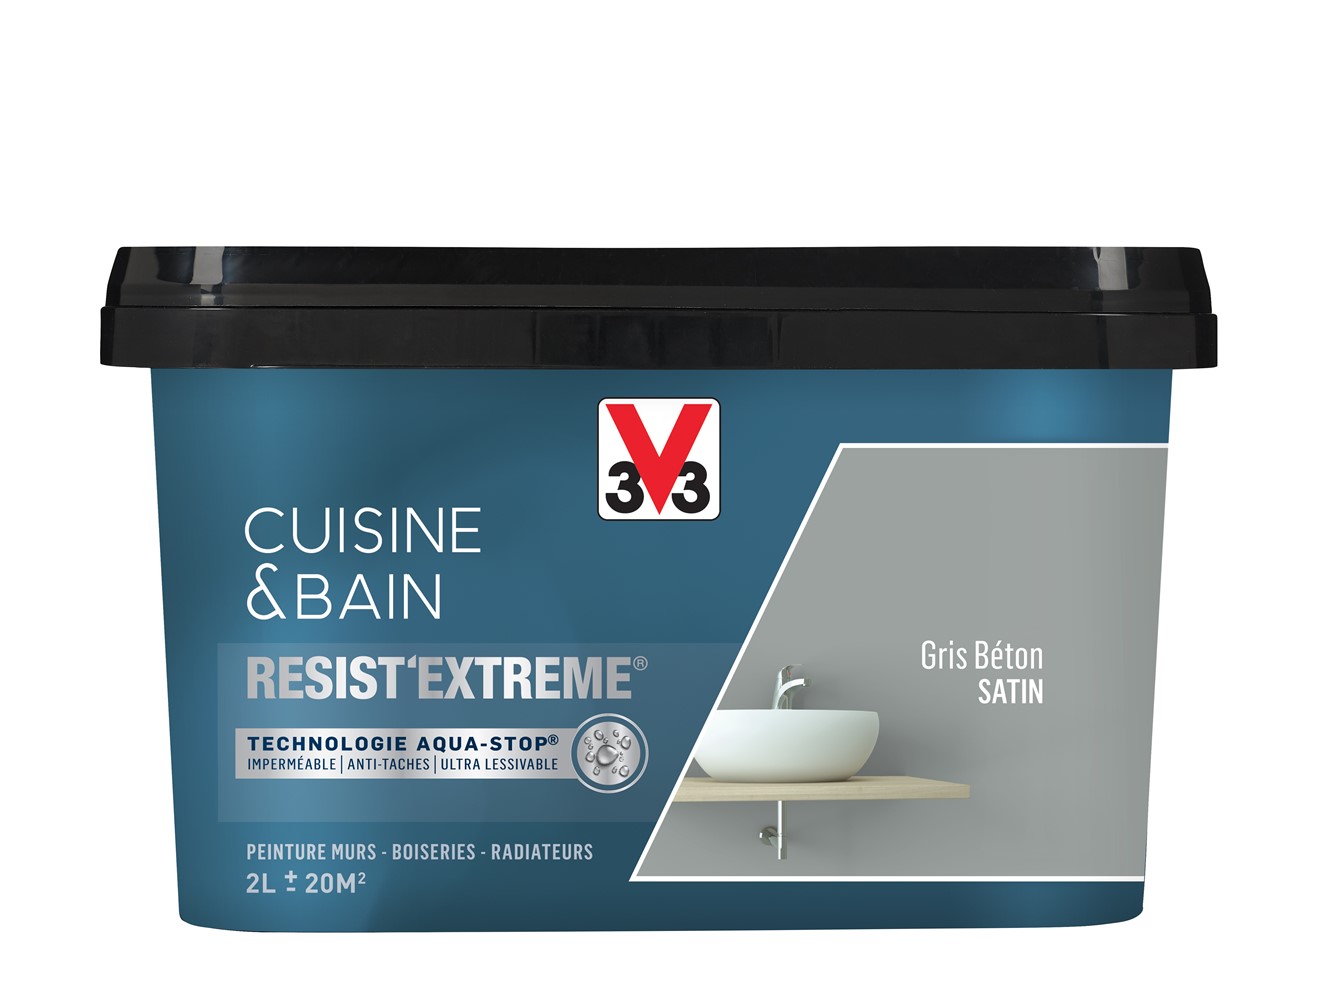 Peinture cuisine & bain Resist'Extrême gris béton satin 2L - V33